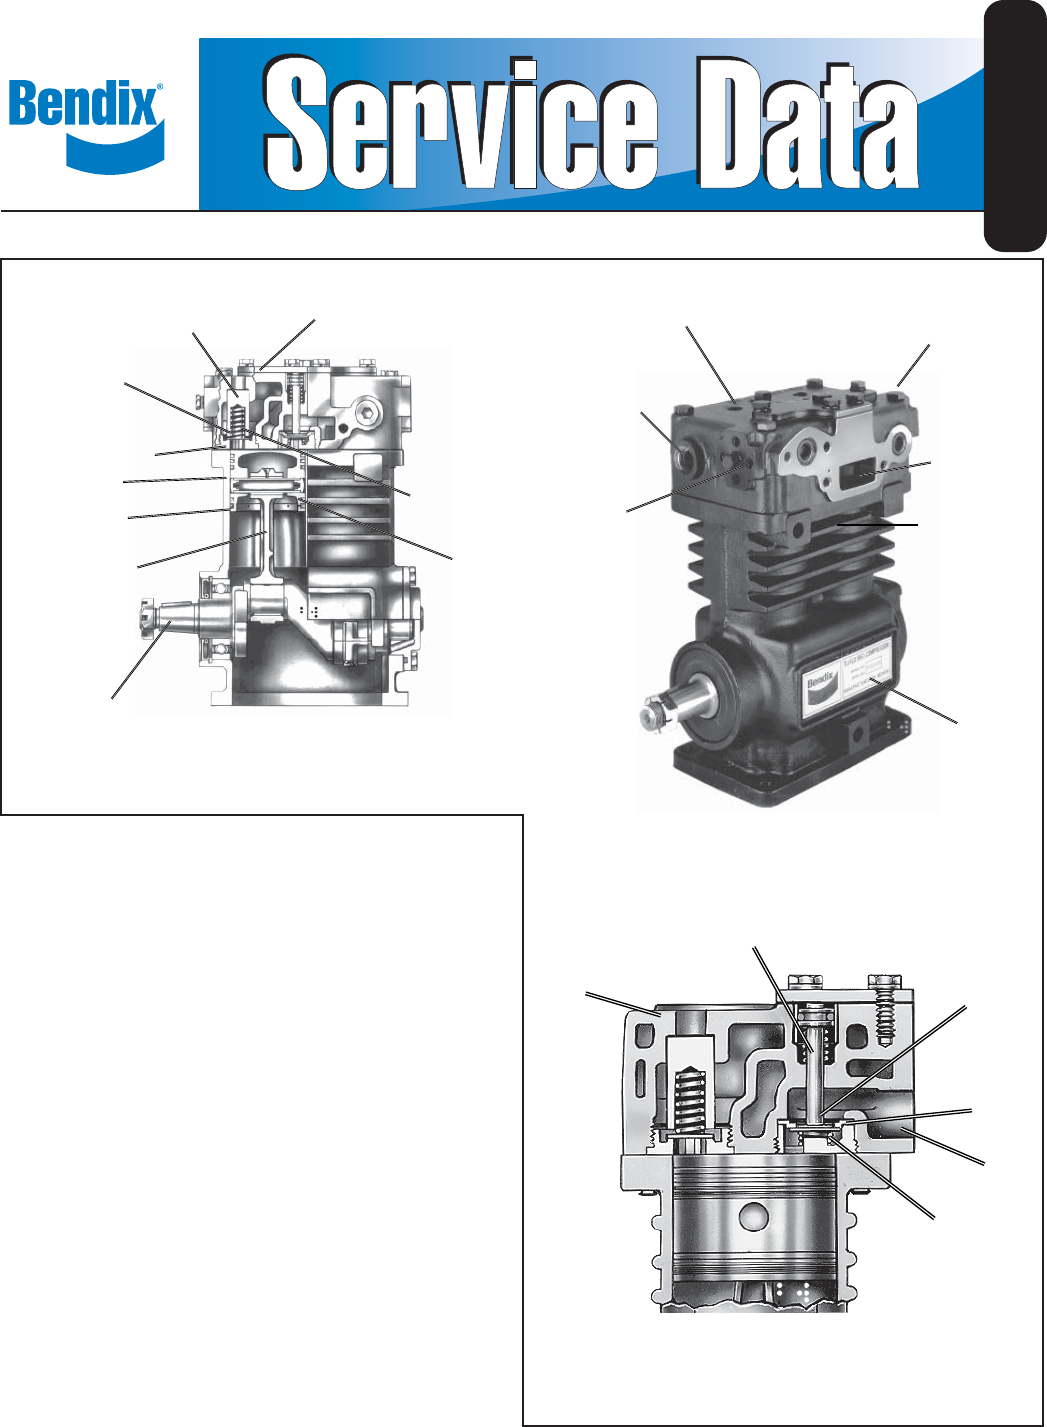 Air Brake Compressor Repair Kit for BENDIX TU-FLO 500 